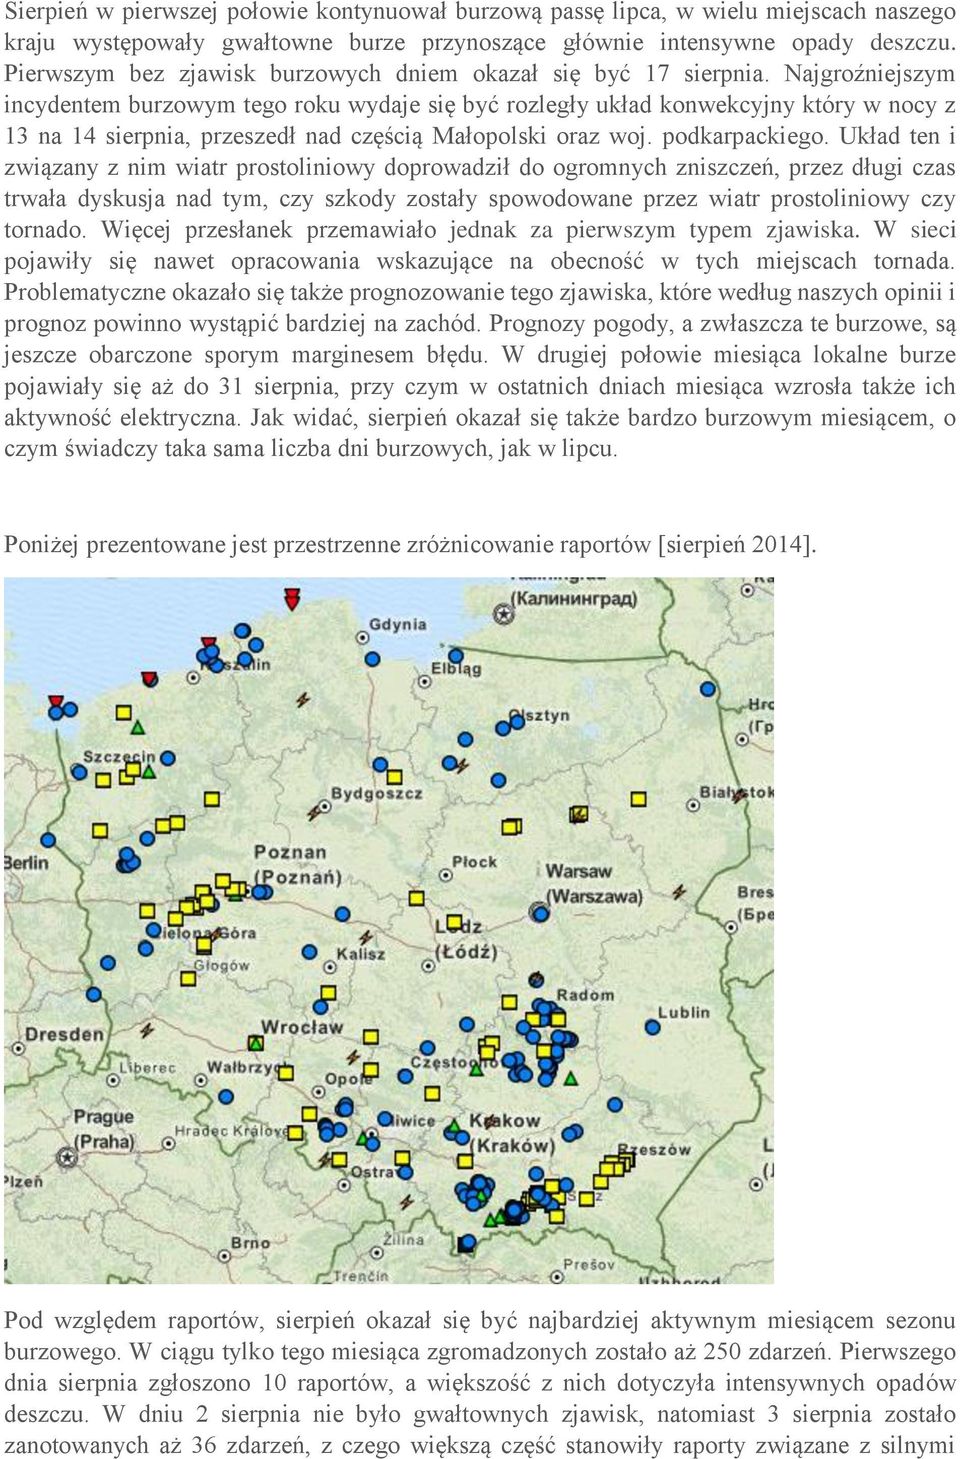 Najgroźniejszym incydentem burzowym tego roku wydaje się być rozległy układ konwekcyjny który w nocy z 13 na 14 sierpnia, przeszedł nad częścią Małopolski oraz woj. podkarpackiego.